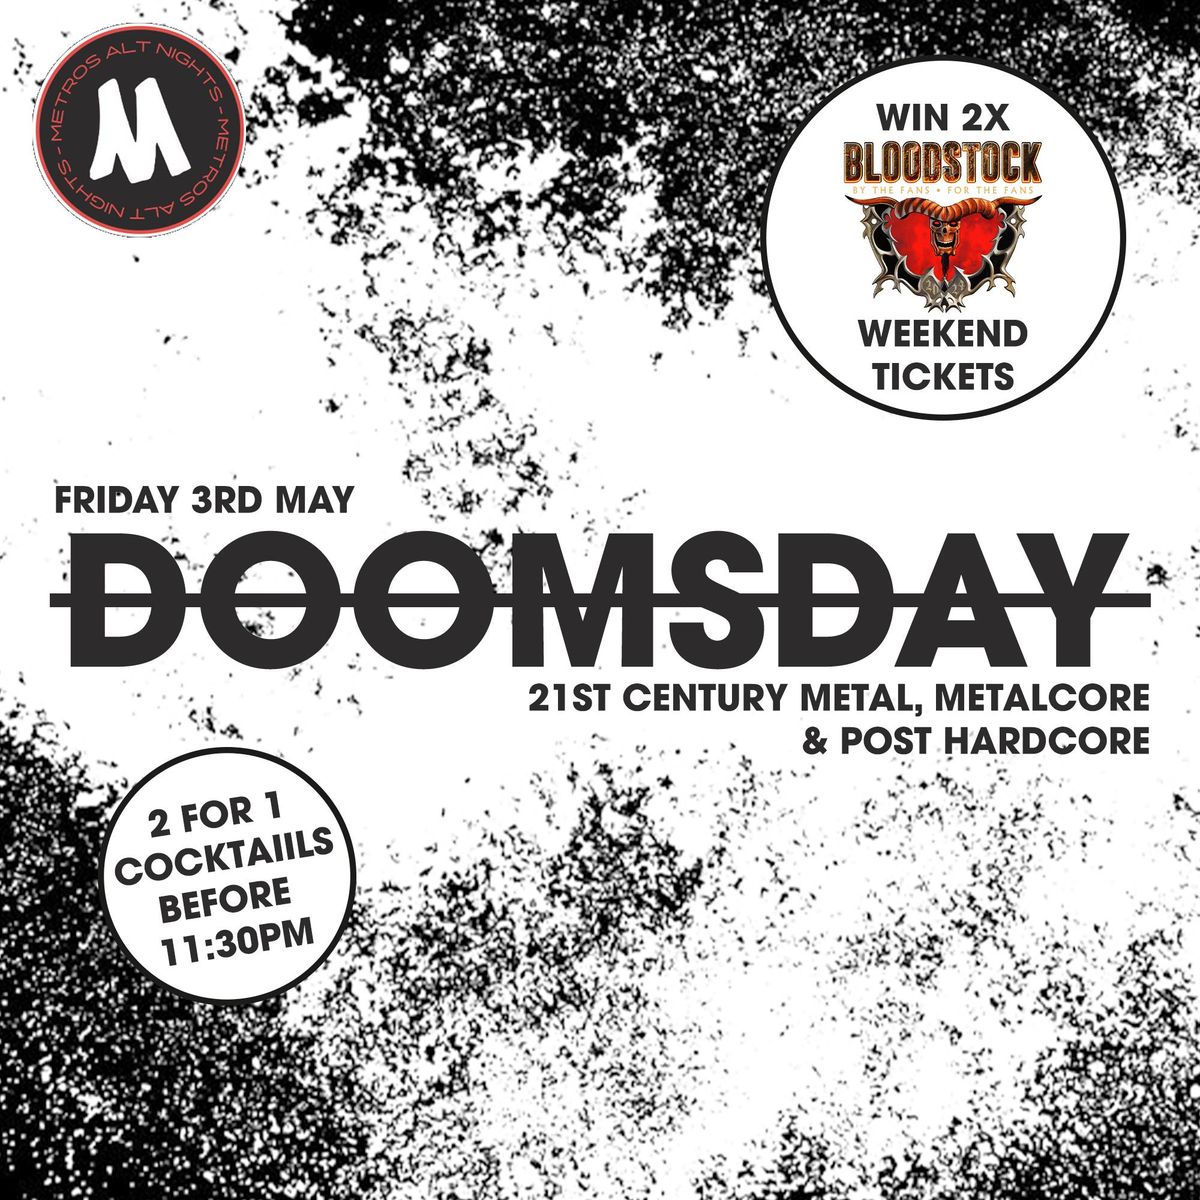 Doomsday: Win 2x Bloodstock Festival Tickets